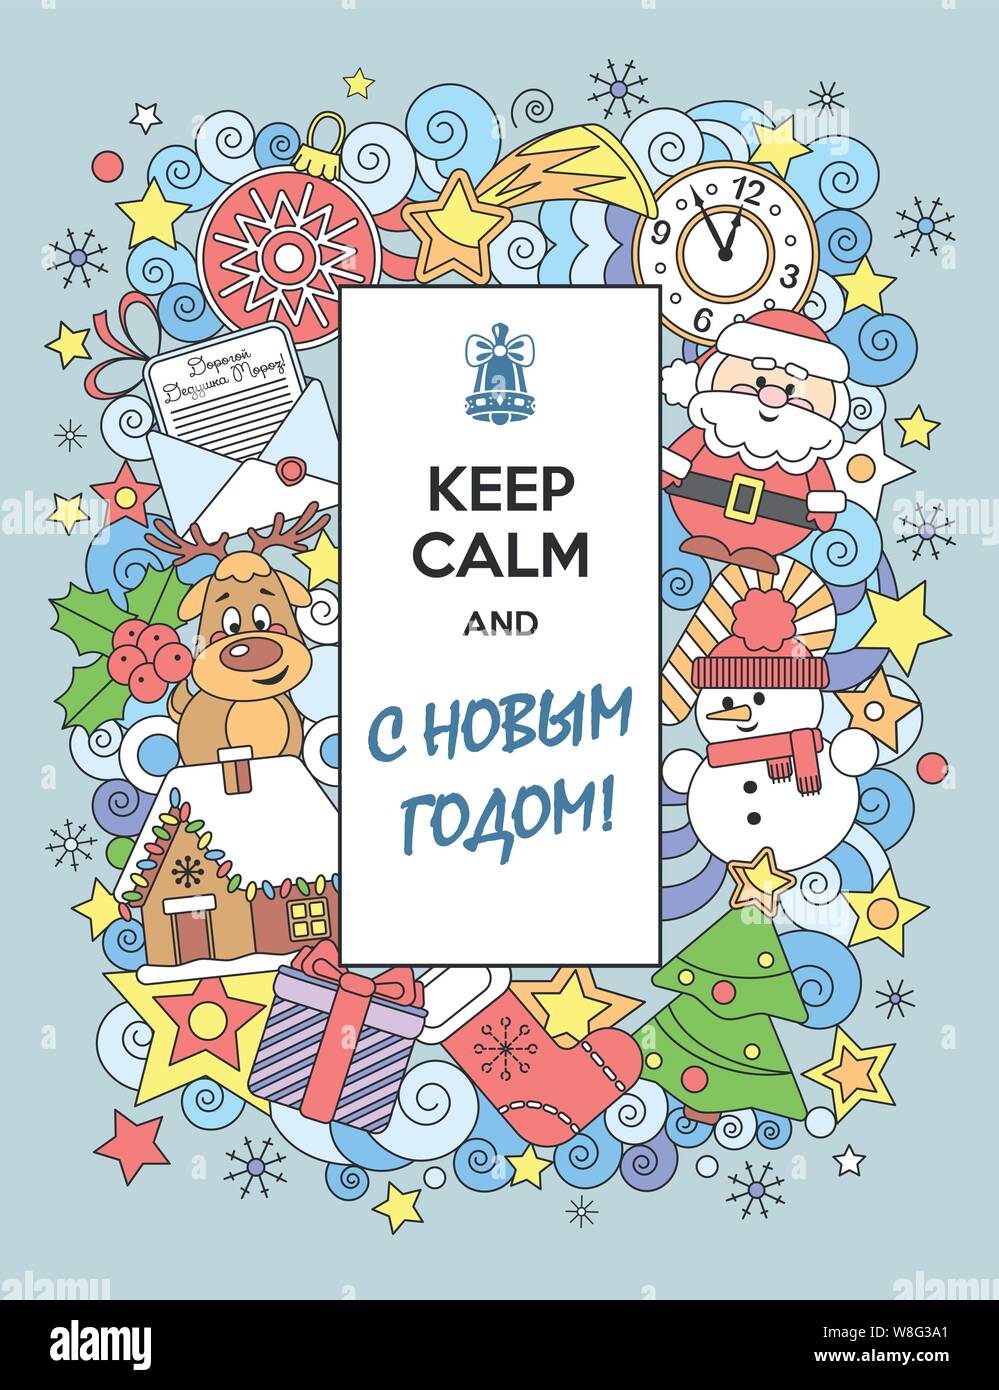 Grußkarte ruhiges und glückliches neues Jahr in Russischer Sprache halten. Lustige Comicfiguren. Vector Illustration. Stock Vektor